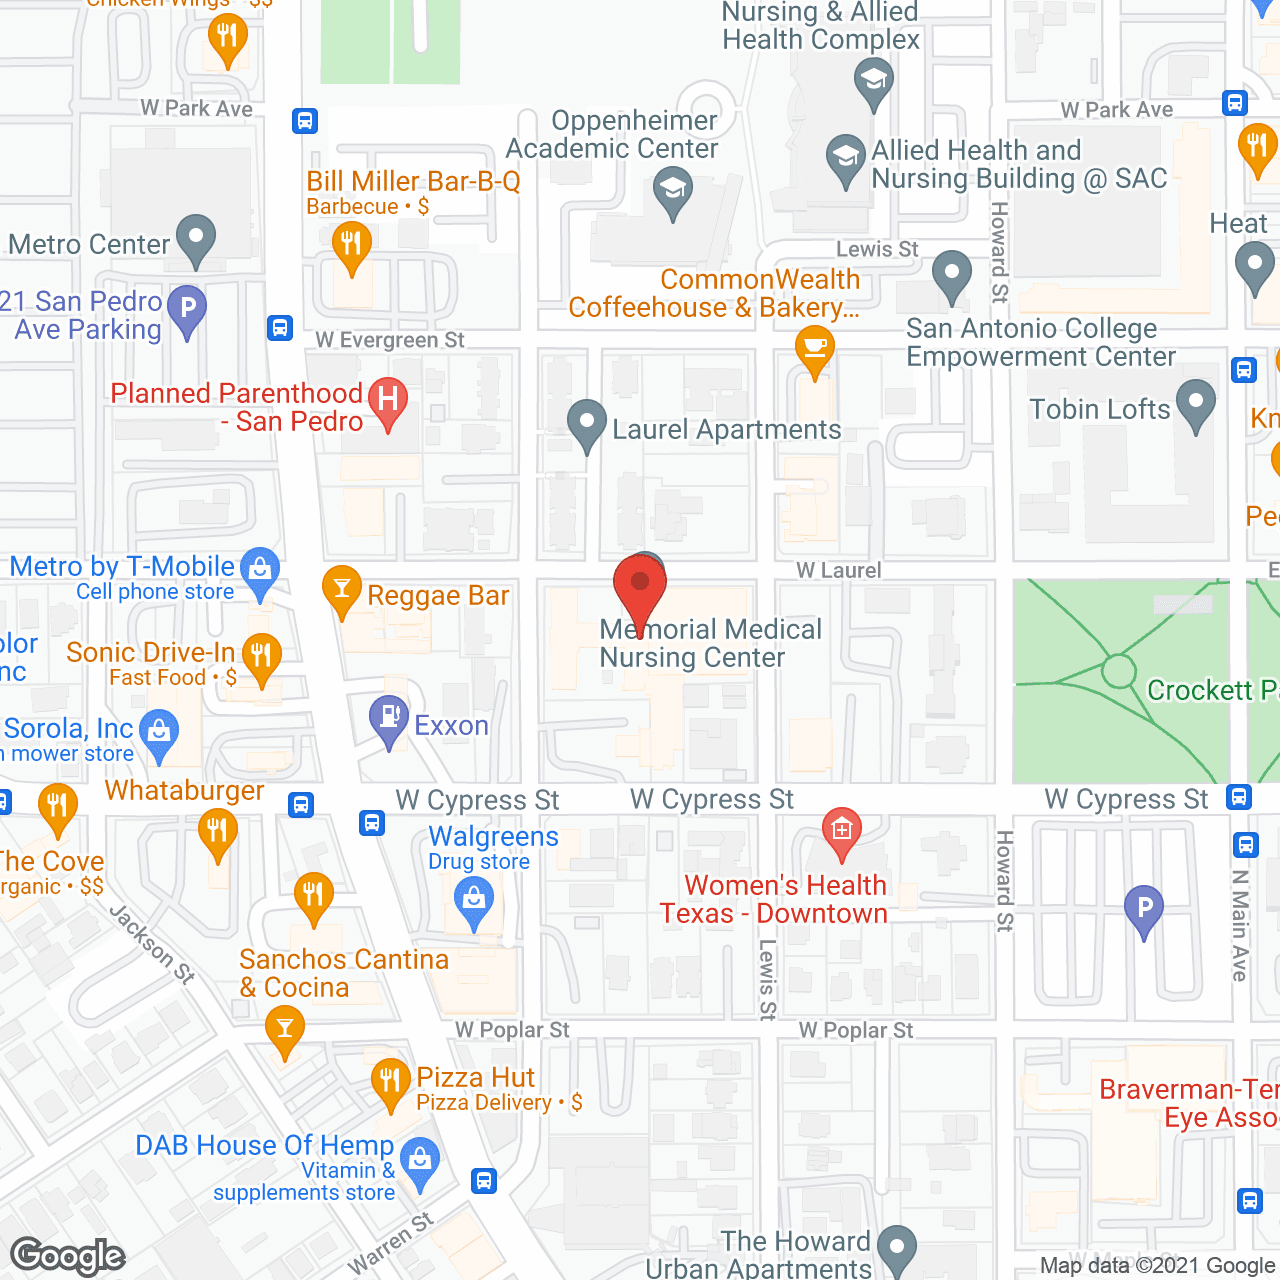 Memorial Medical Nursing Home in google map